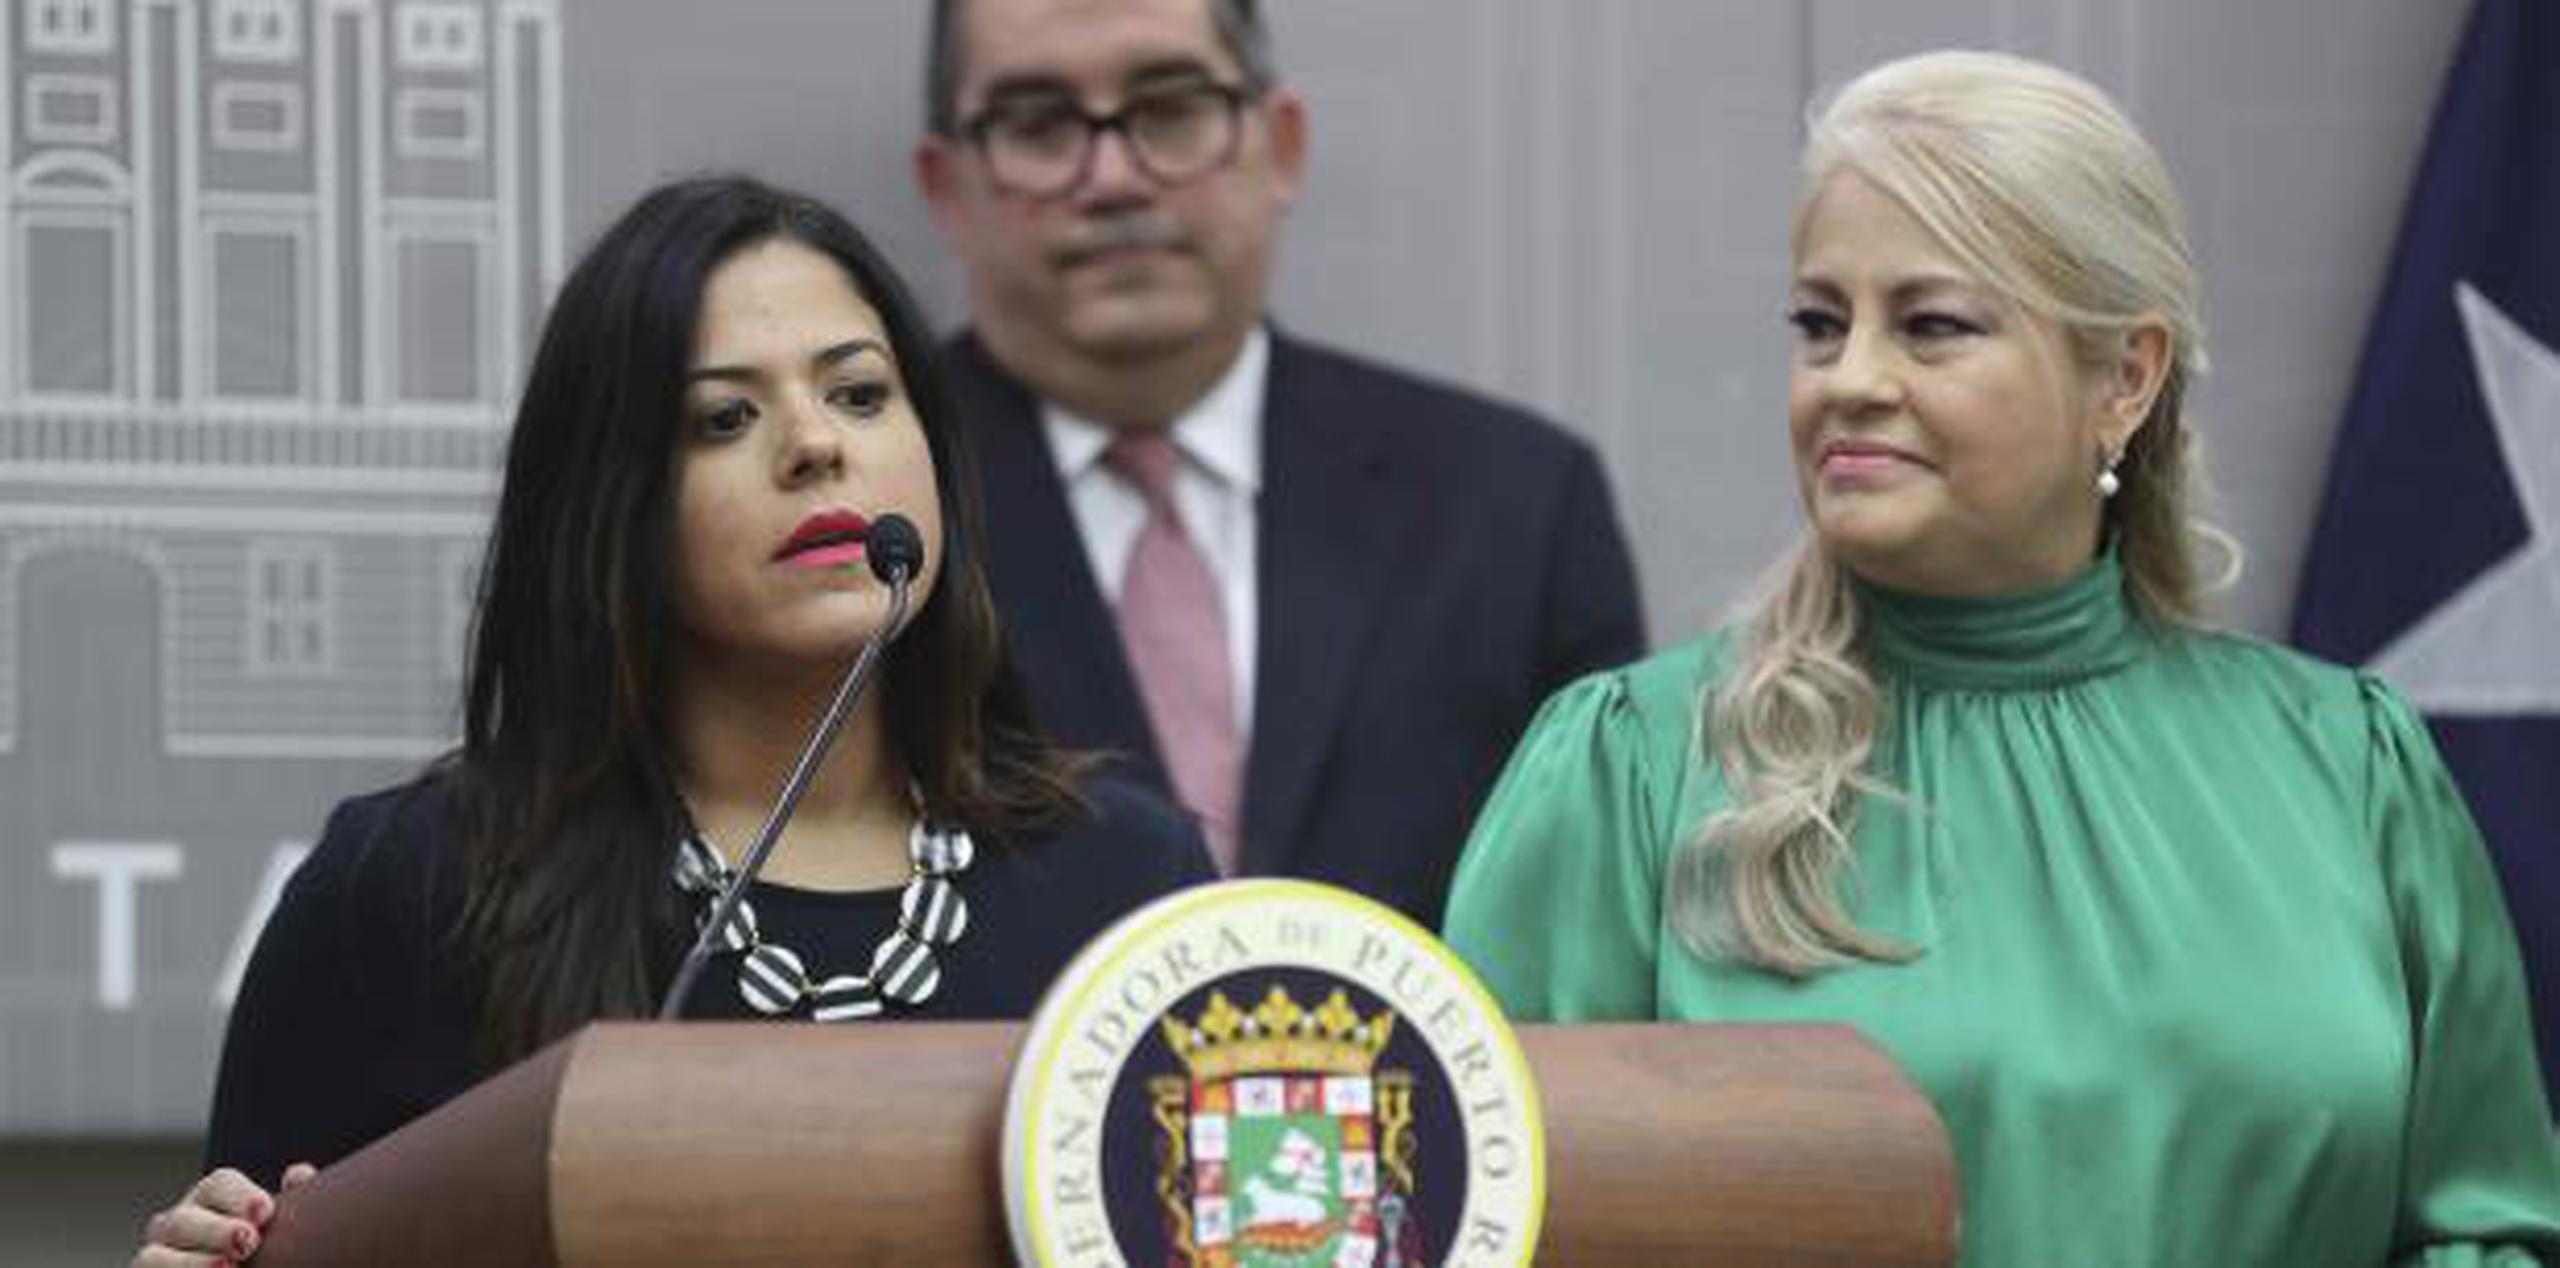 Ana Margarita Mateu Meléndez recalcó que inició en el servicio público antes de que su mamá fuera electa alcaldesa. (vanessa.serra@gfrmedia.com)